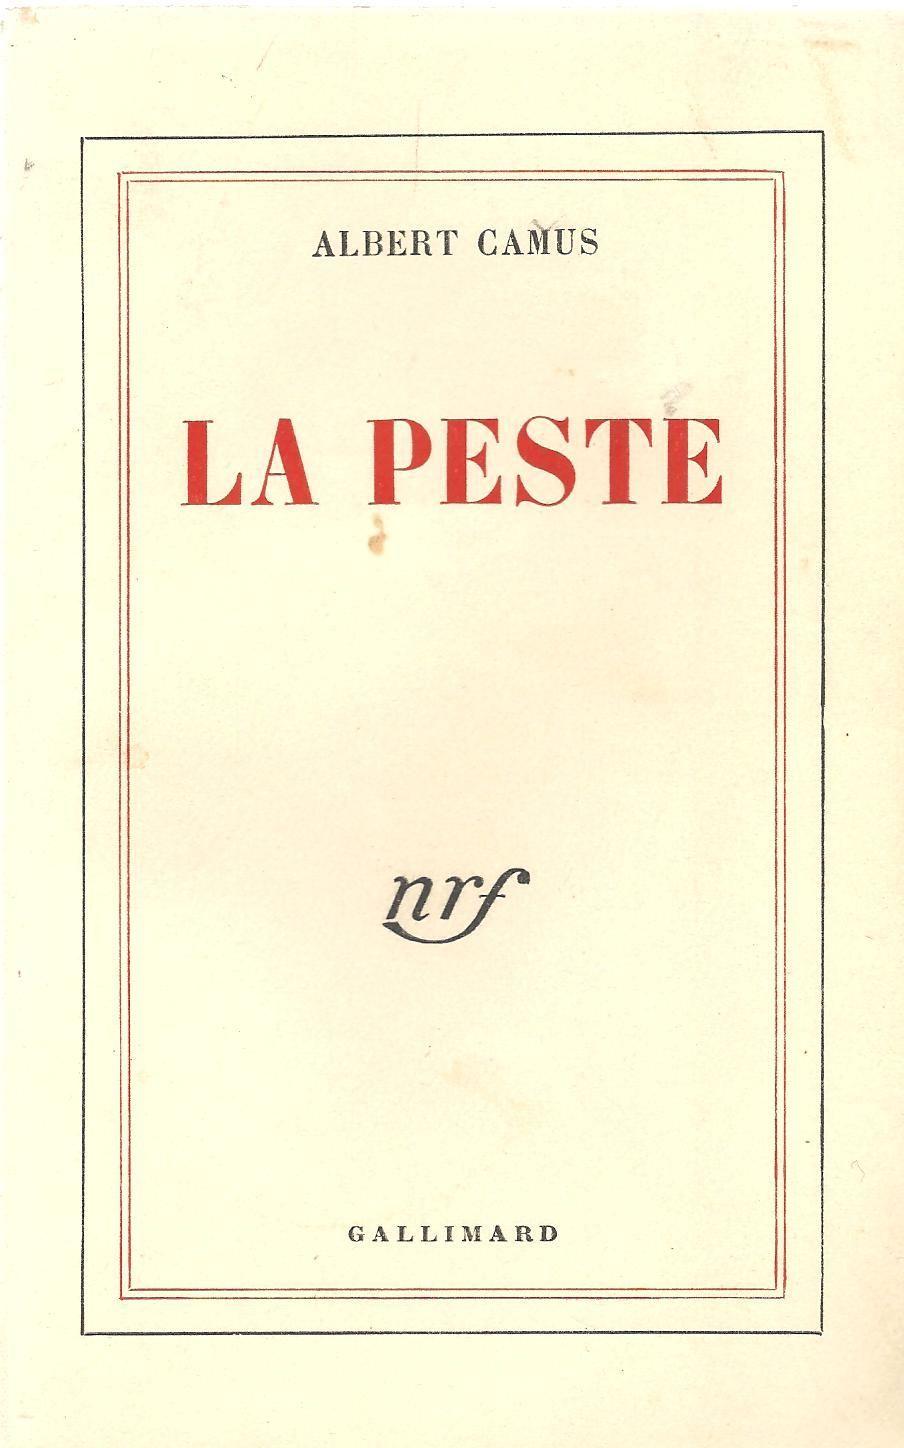 Book cover of La peste.